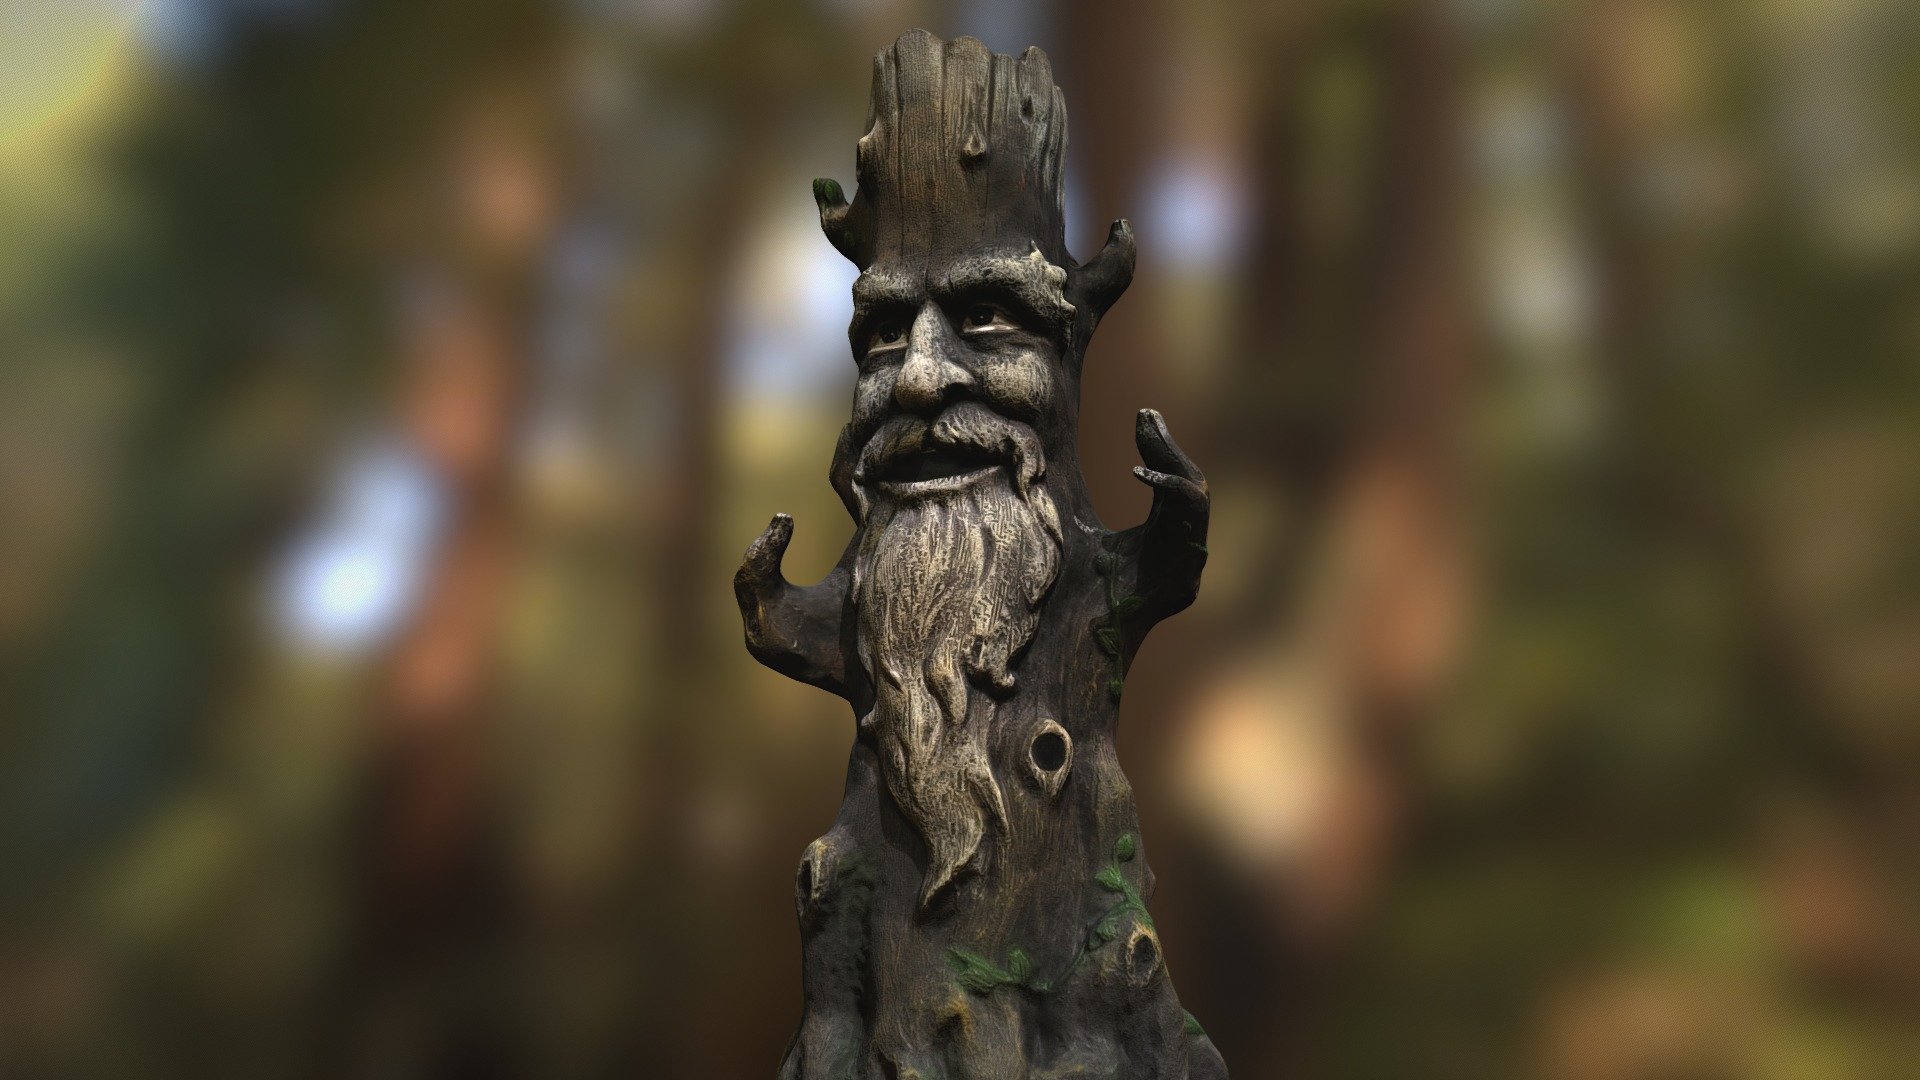 Wise mystical demo tree : r/SFM